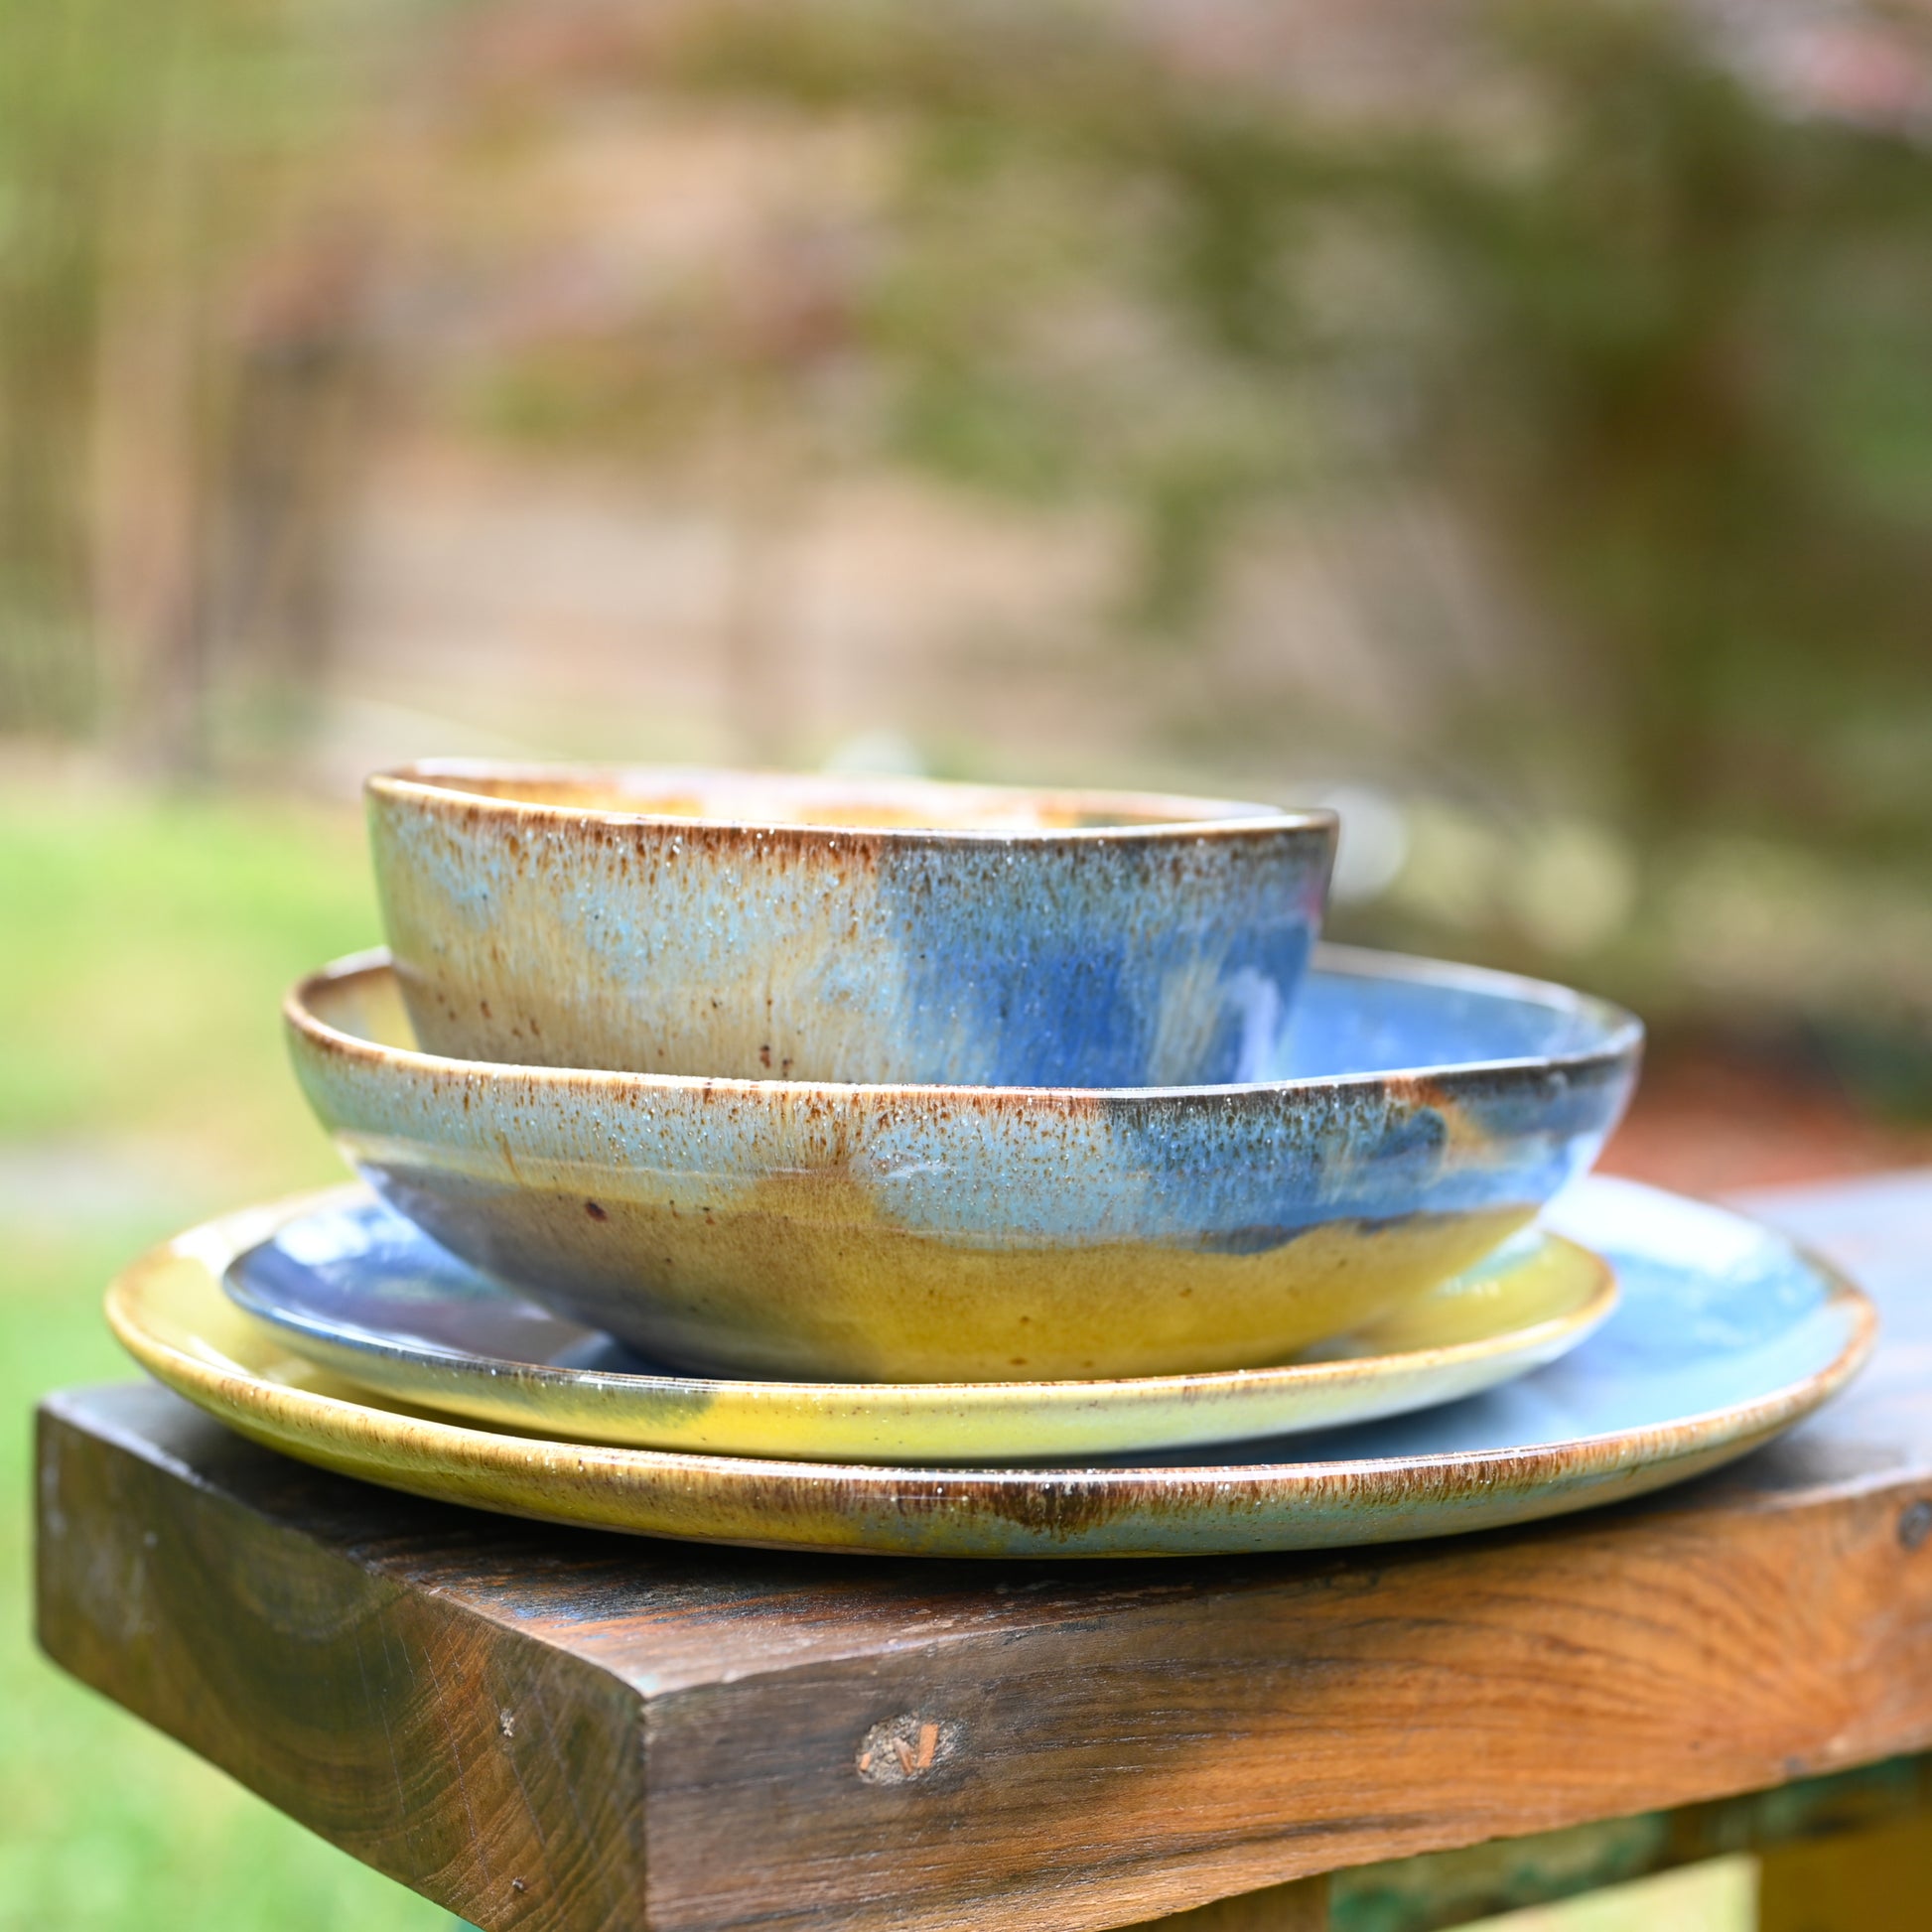 assiettes de différentes tailles (plates, à dessert, creuse) et bol de style "Corals" (grès naturel avec motif tricolore bleu profond, bleu ciel et jaune, empilées sur un banc en bois dans un jardin